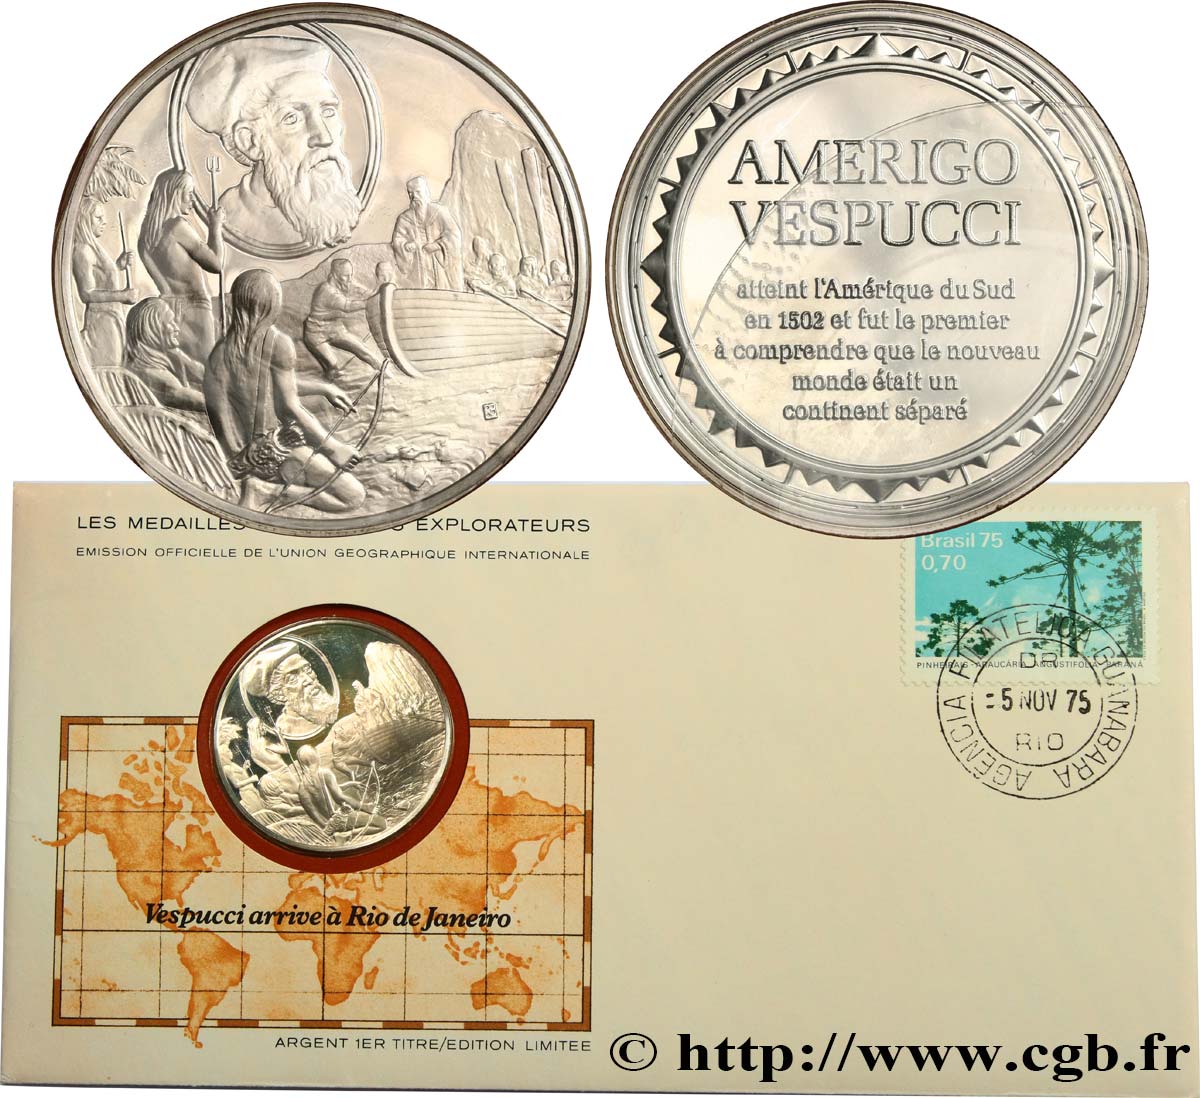 THE GREAT EXPLORERS  MEDALS Enveloppe “Timbre médaille”, Vespucci arrive à Rio de Janeiro fST